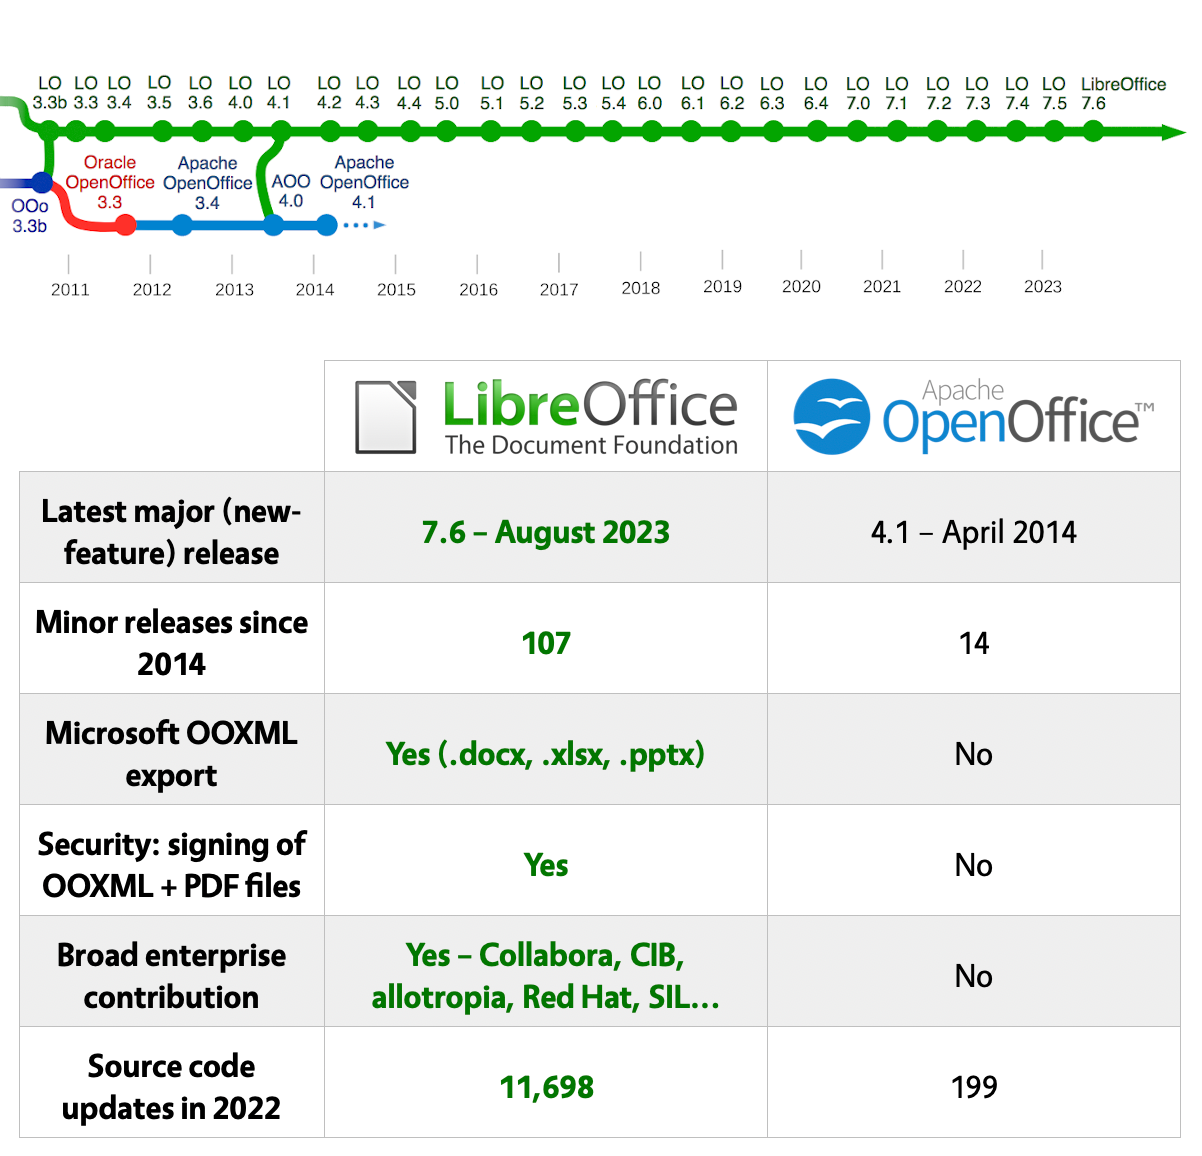 OpenOffice Impress, Download OpenOffice FREE